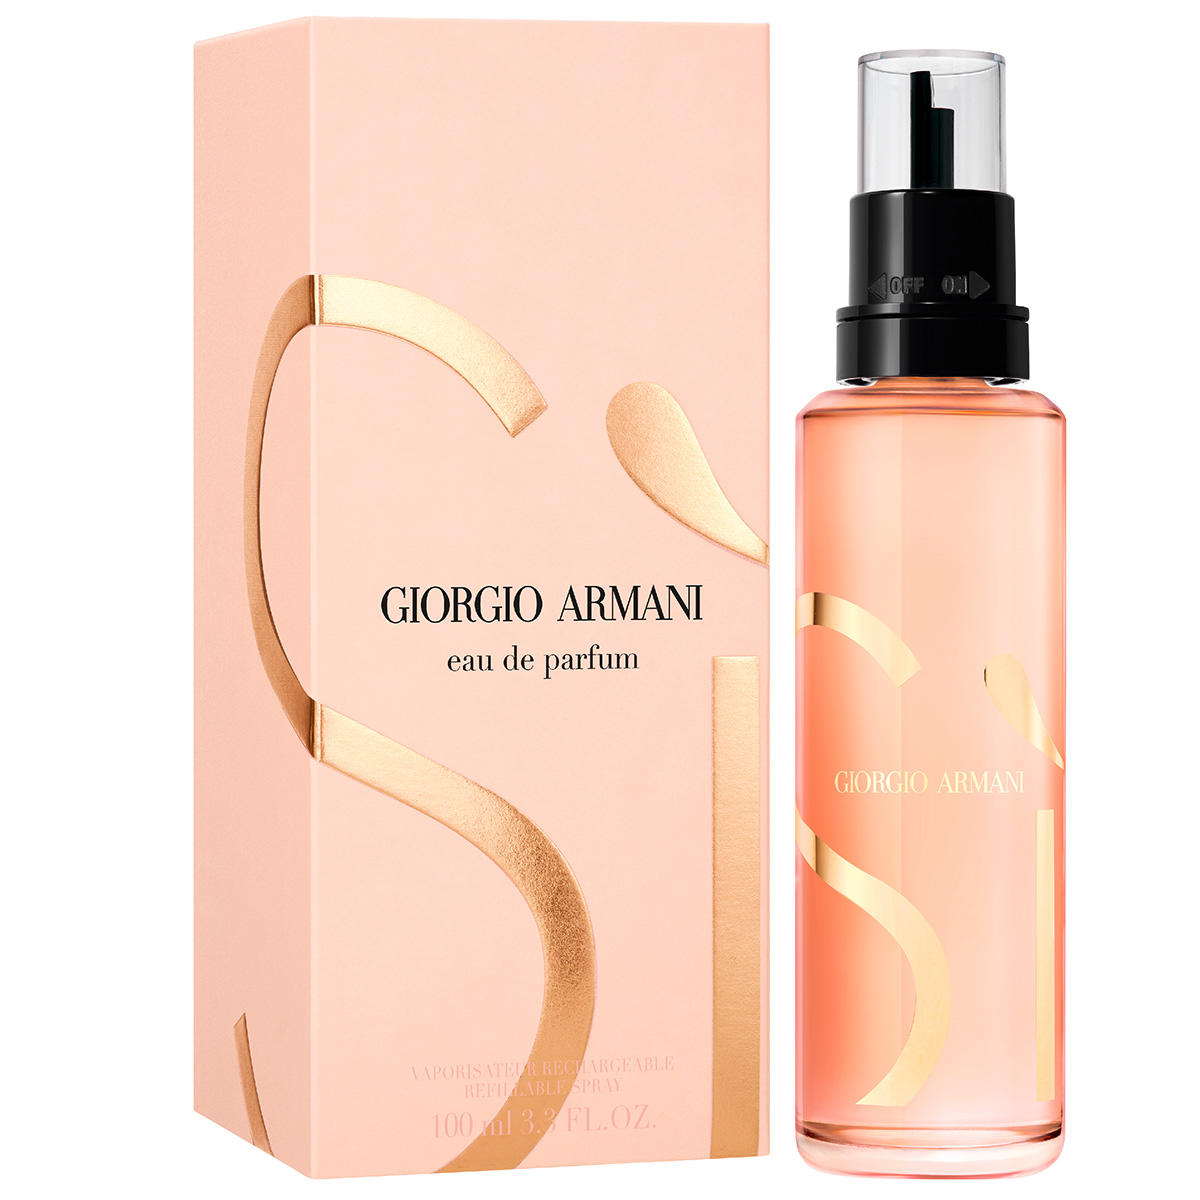 Giorgio Armani Sì Eau de Parfum Refill 100 ml - 2